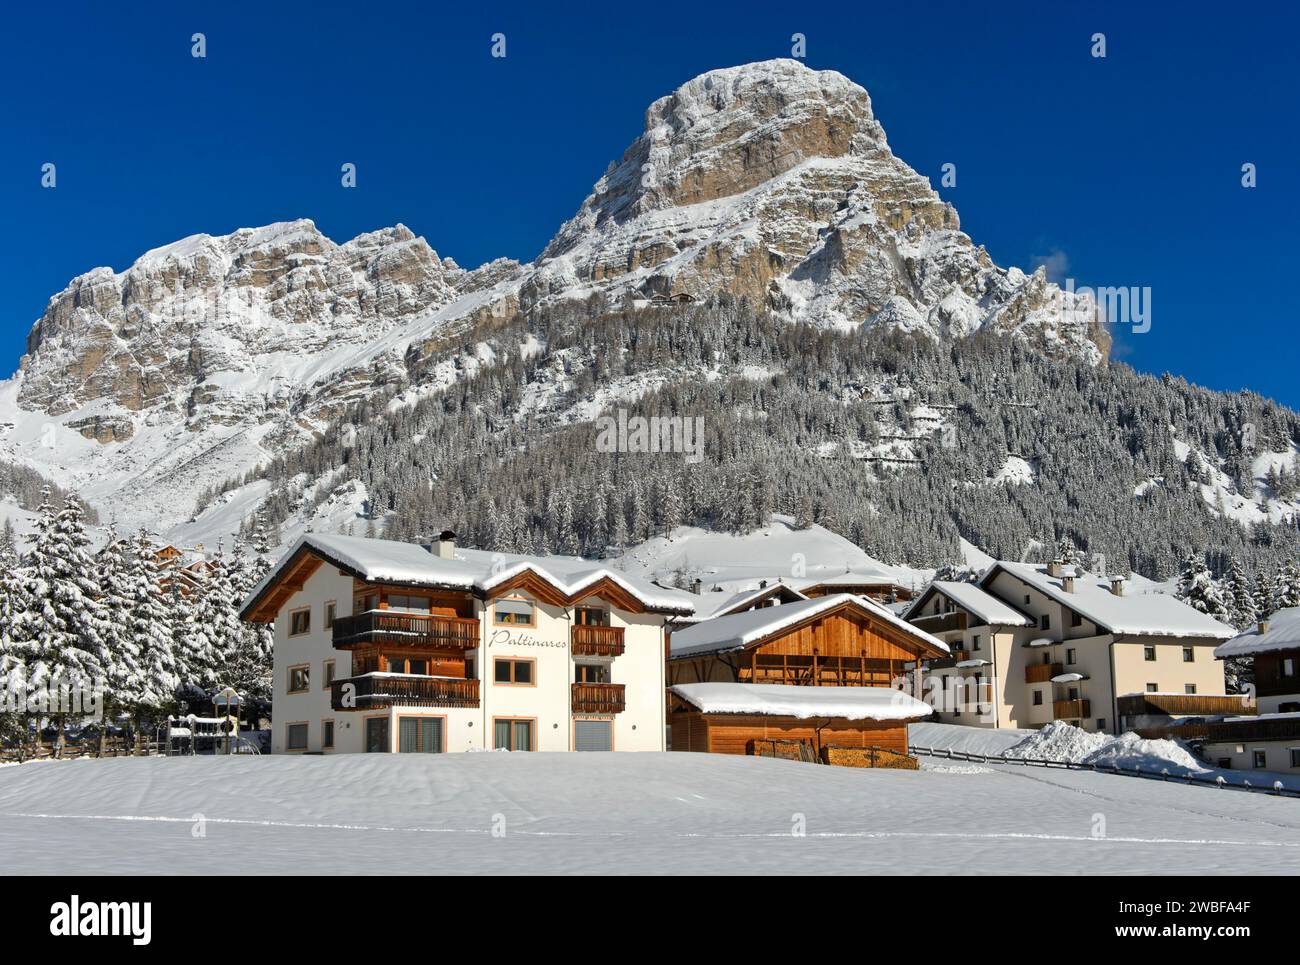 La frazione innevata di Colfosco, Colfosco, ai piedi della vetta del Sassongher, Colfosco, Corvara, ski area alta Badia, Dolomiti, alto Adige Foto Stock